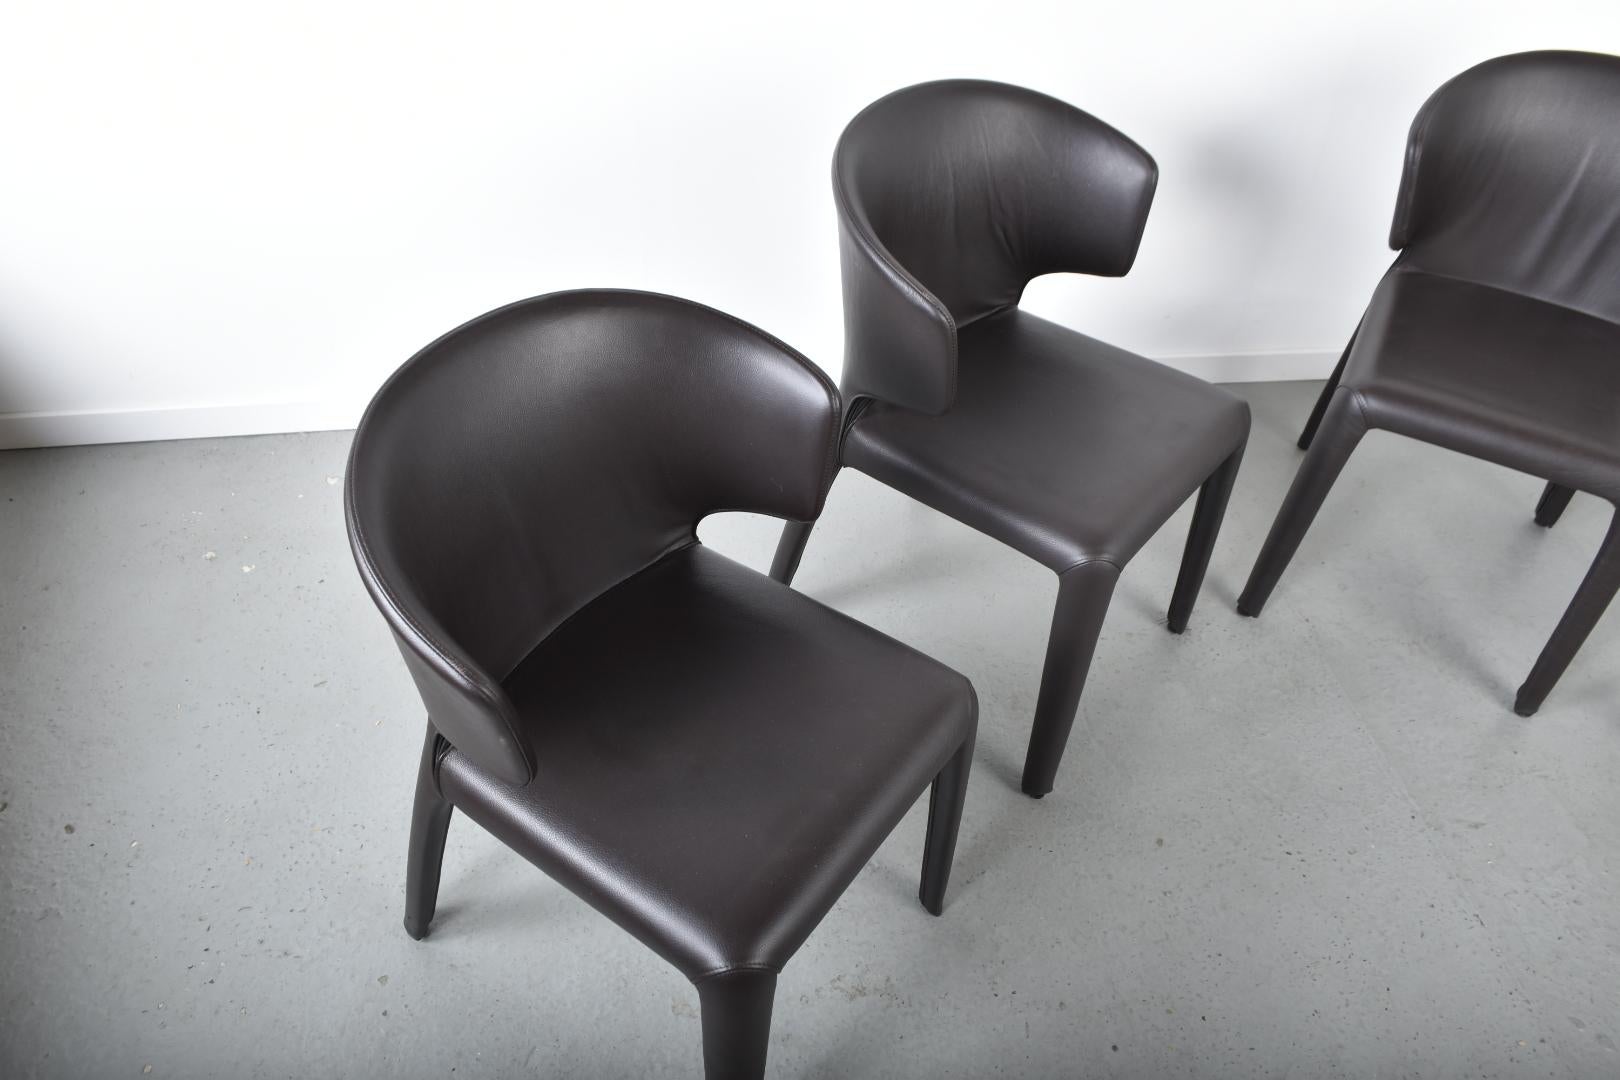 4 Stühle Hola 367 von dem Schweizer Designer Hannes Wettstein für Cassina.
